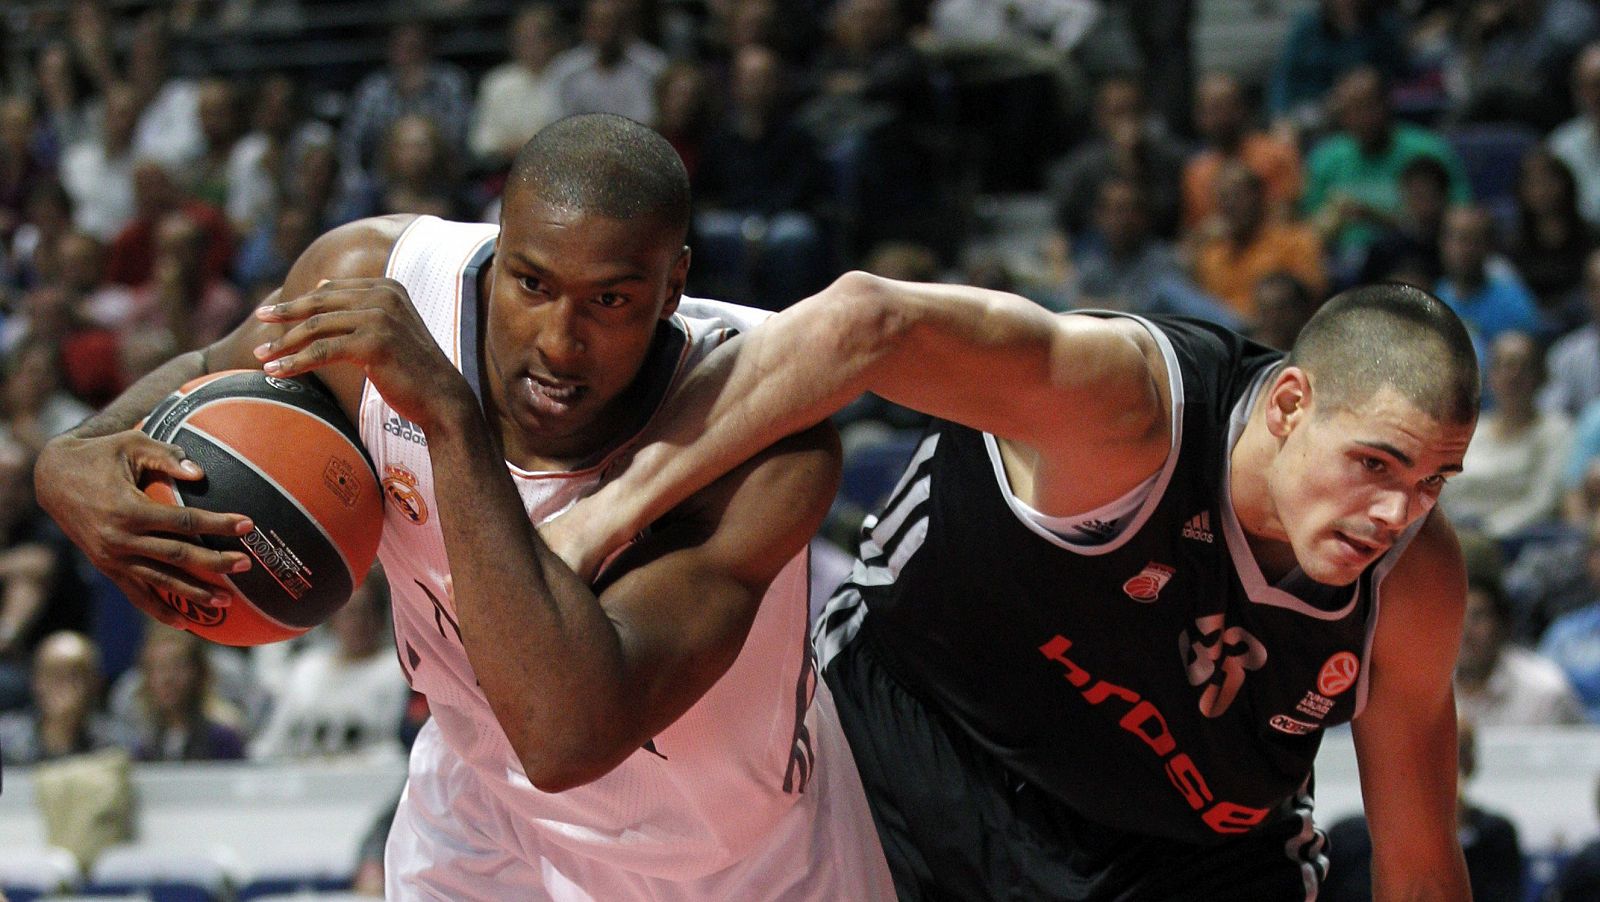 Marcus Slaughter (i) lucha un balón con el pívot alemán del Brose Baskets Mail Zirbes durante el partido.